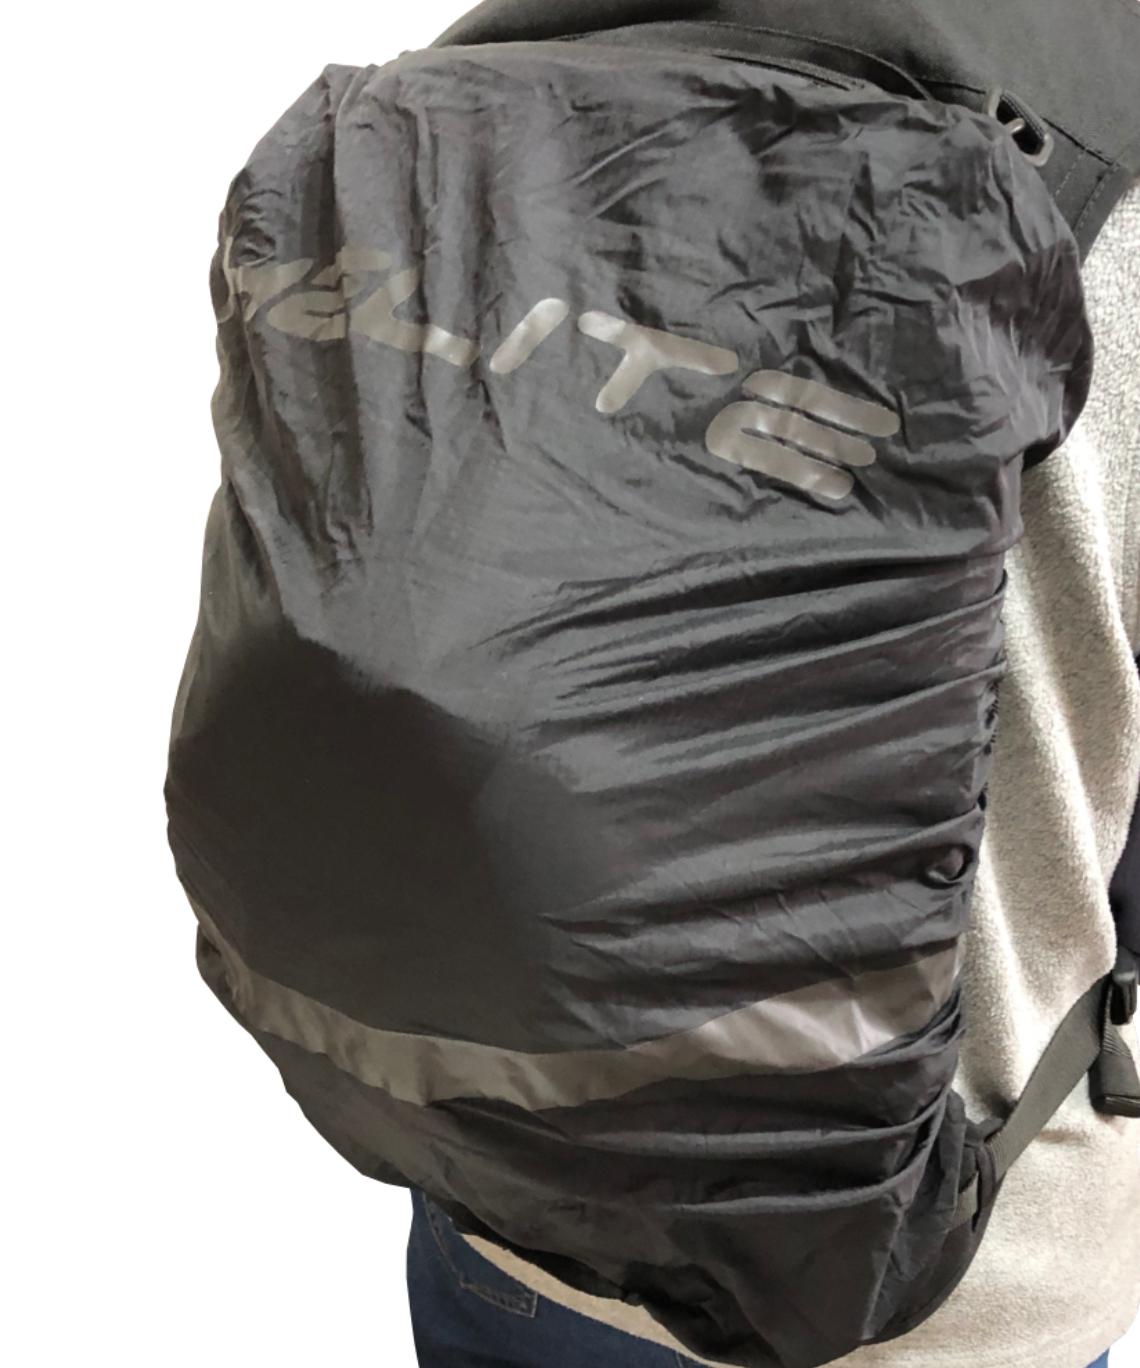 Airbag Backpack Helmet Bag And Waterproof Cover View